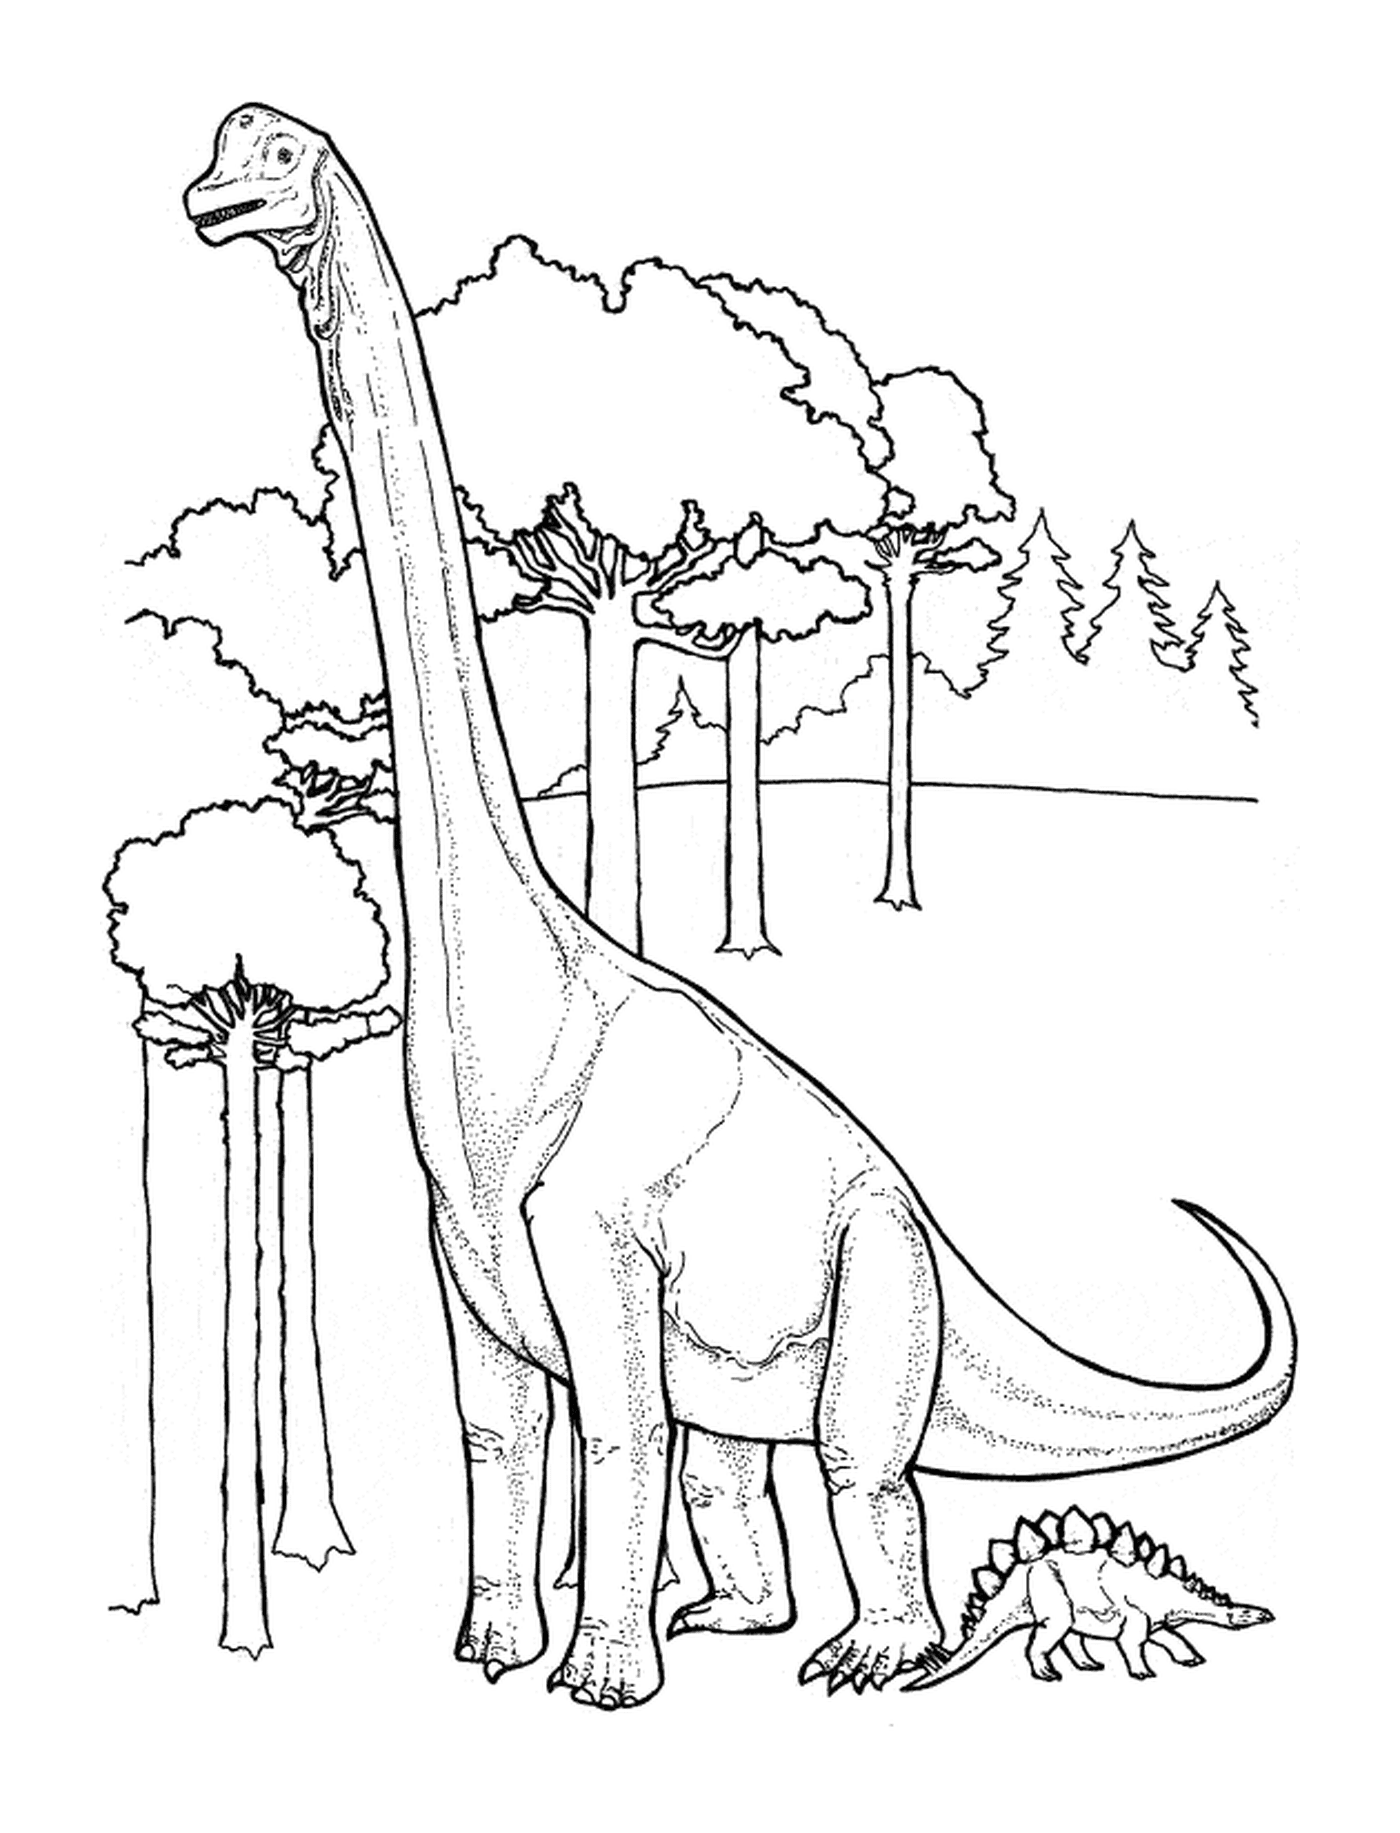  Динозавр стоит в роскошном лесу 